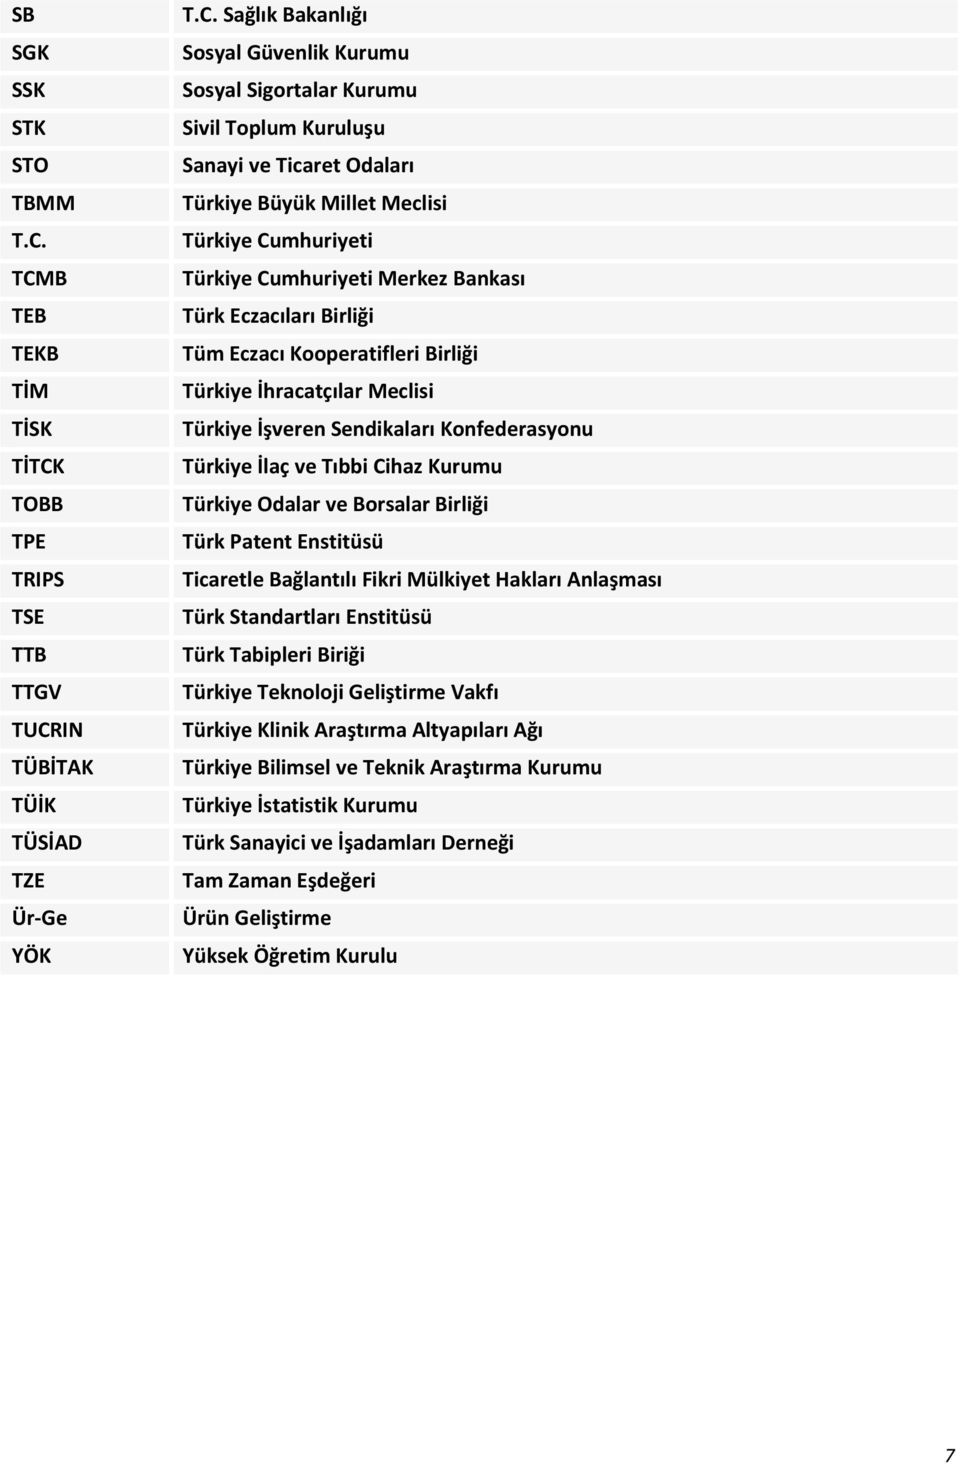 Ticaret Odaları Türkiye Büyük Millet Meclisi Türkiye Cumhuriyeti Türkiye Cumhuriyeti Merkez Bankası Türk Eczacıları Birliği Tüm Eczacı Kooperatifleri Birliği Türkiye İhracatçılar Meclisi Türkiye